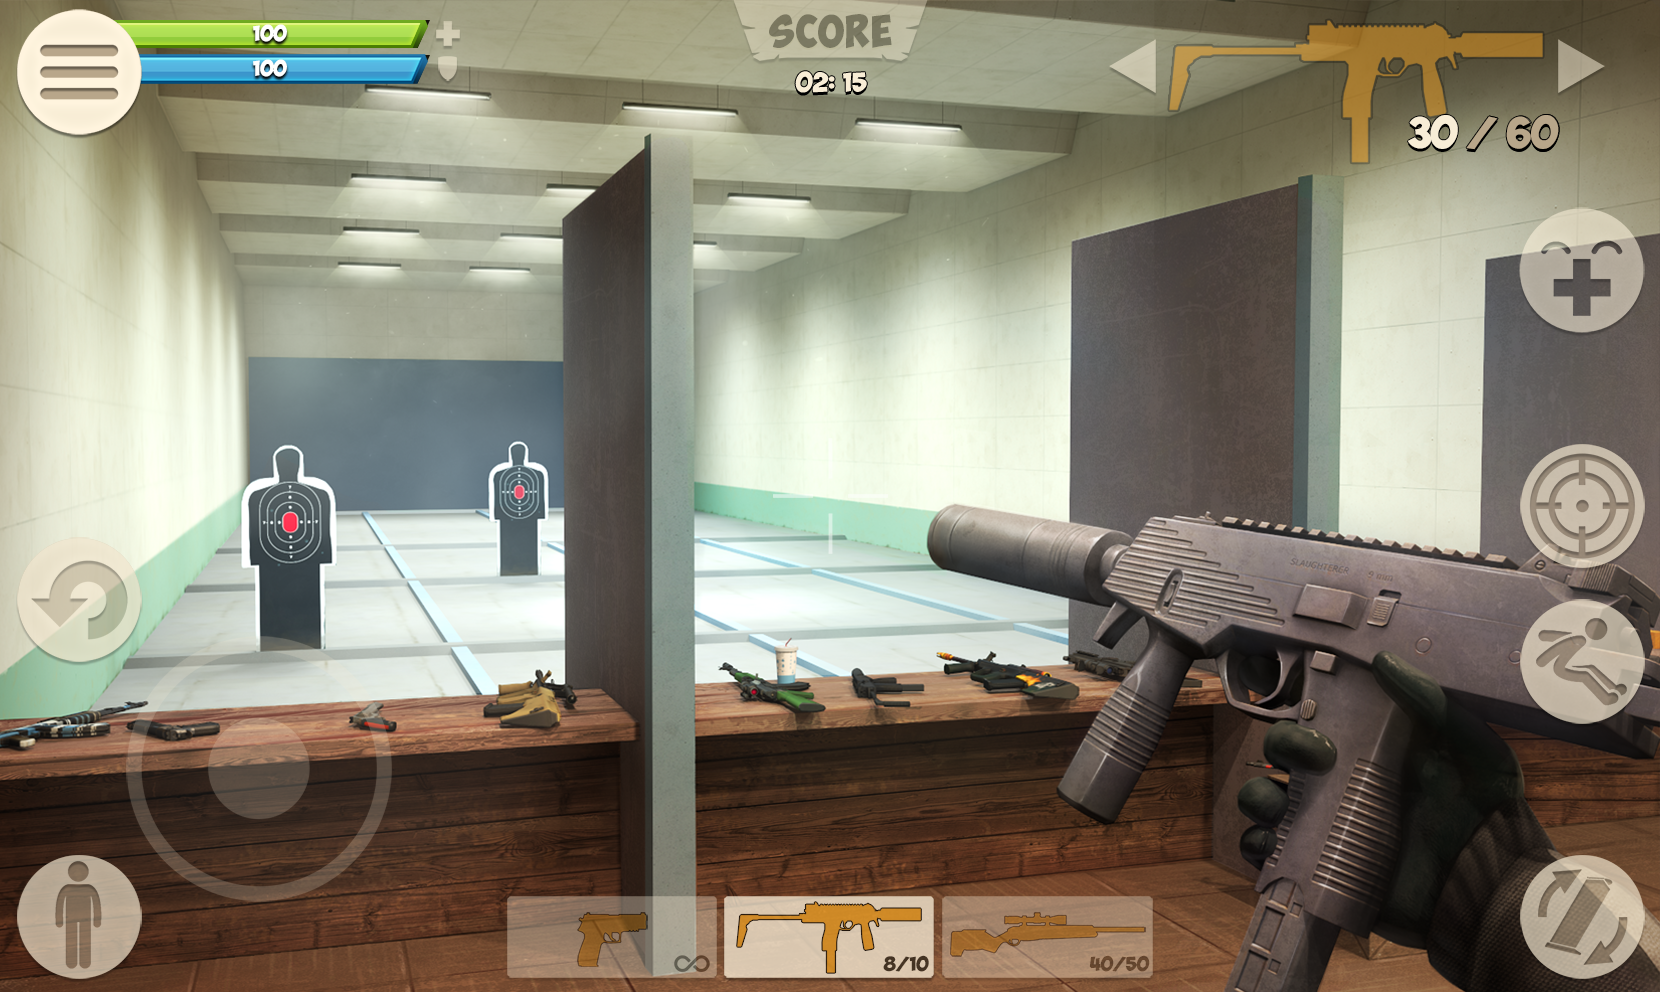 Screenshot 1 of Contra City - Penembak Dalam Talian (3D FPS) 0.9.9